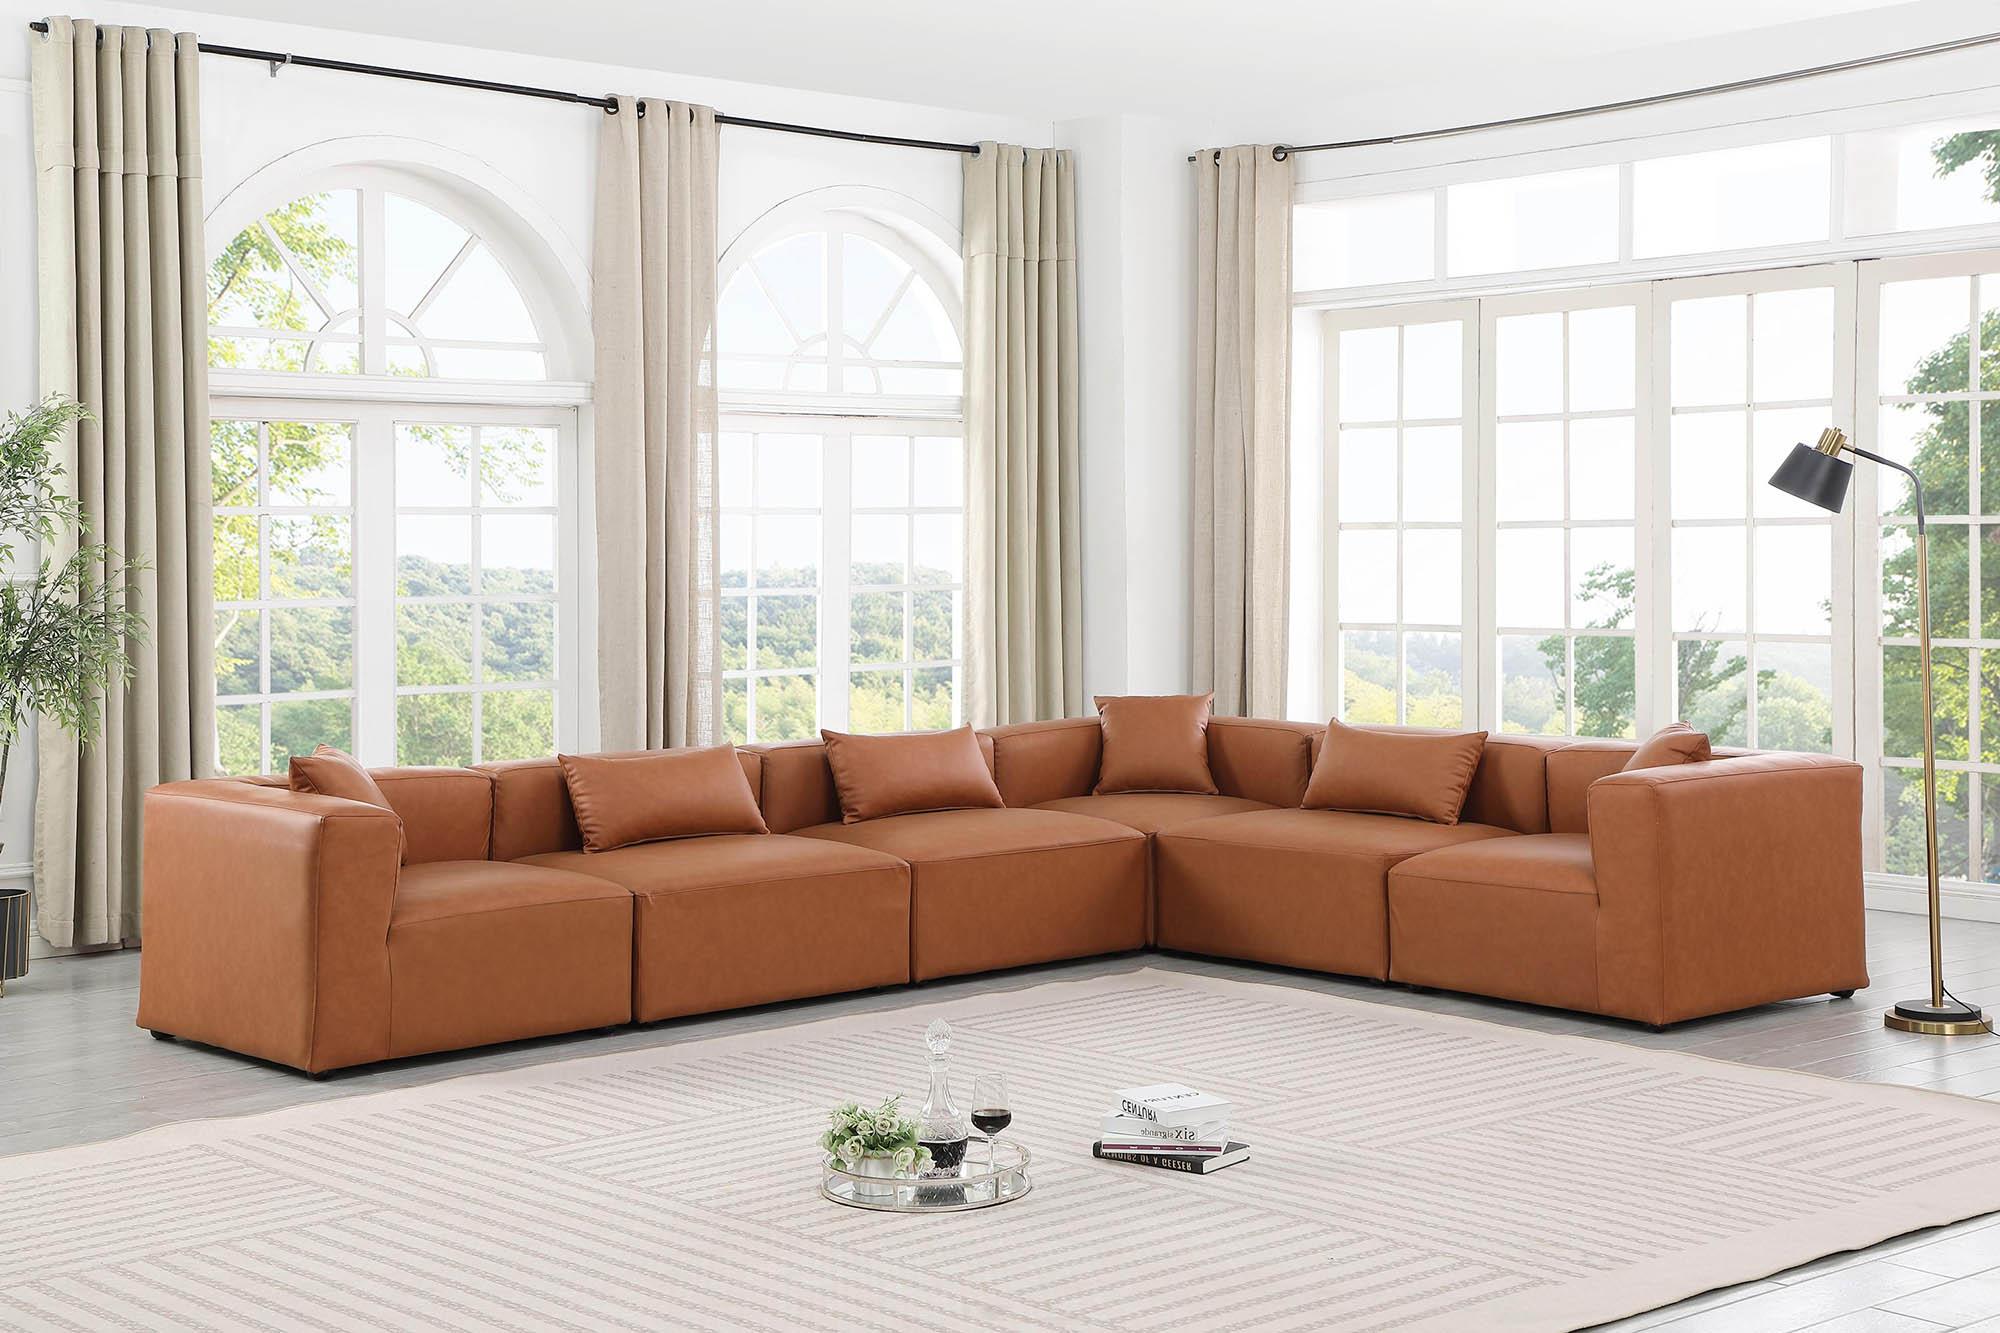 

    
668Cognac-Sec6A Meridian Furniture Modular Sectional Sofa
